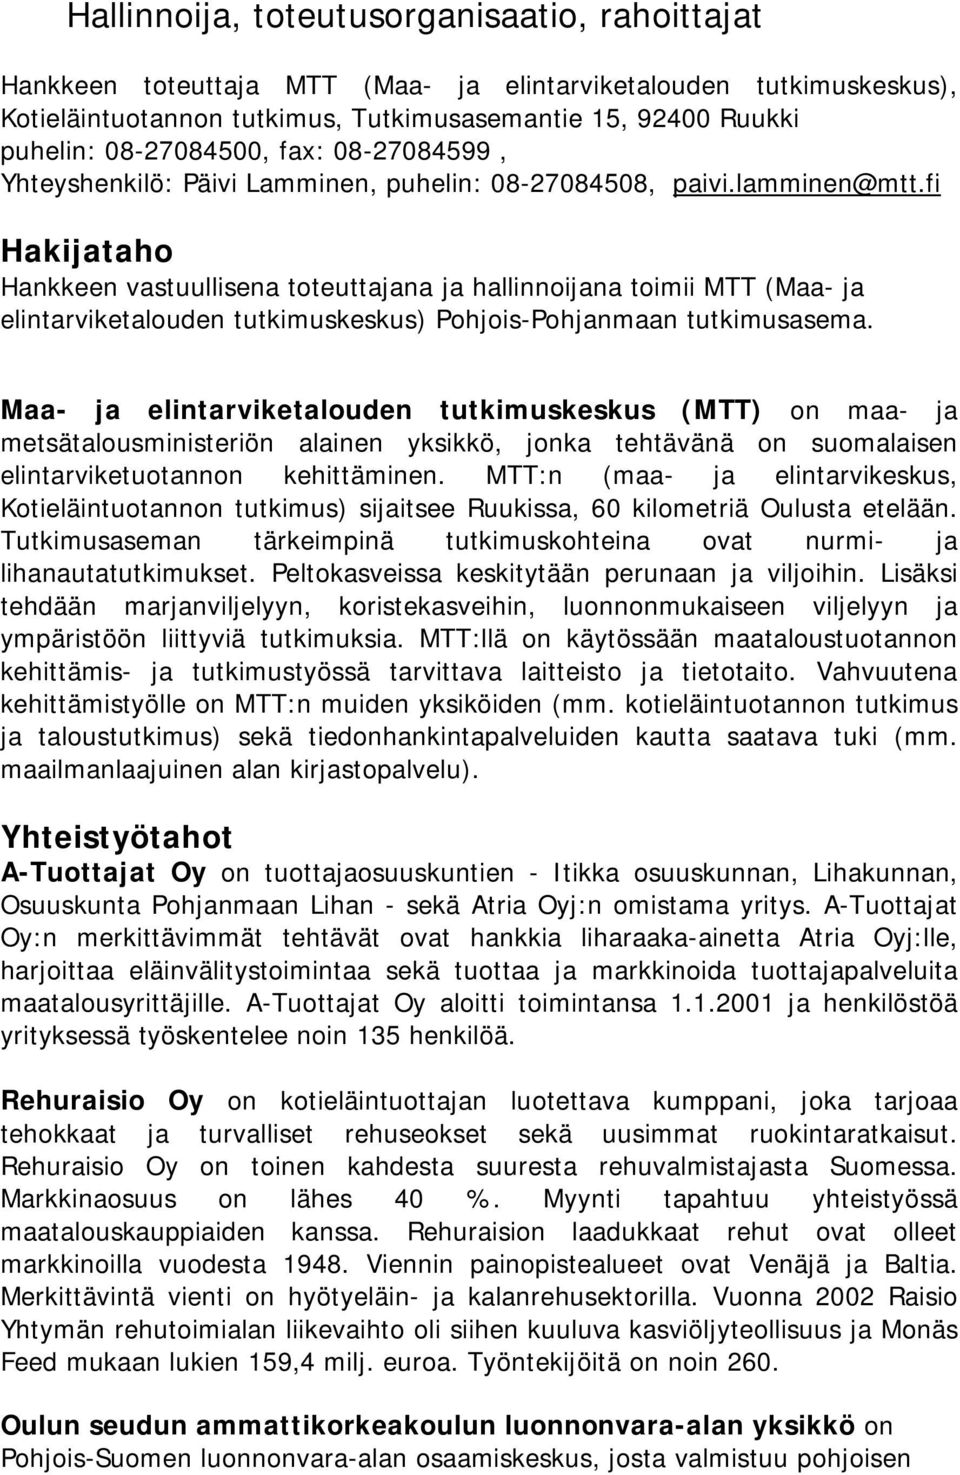 fi Hakijataho Hankkeen vastuullisena toteuttajana ja hallinnoijana toimii MTT (Maa- ja elintarviketalouden tutkimuskeskus) Pohjois-Pohjanmaan tutkimusasema.